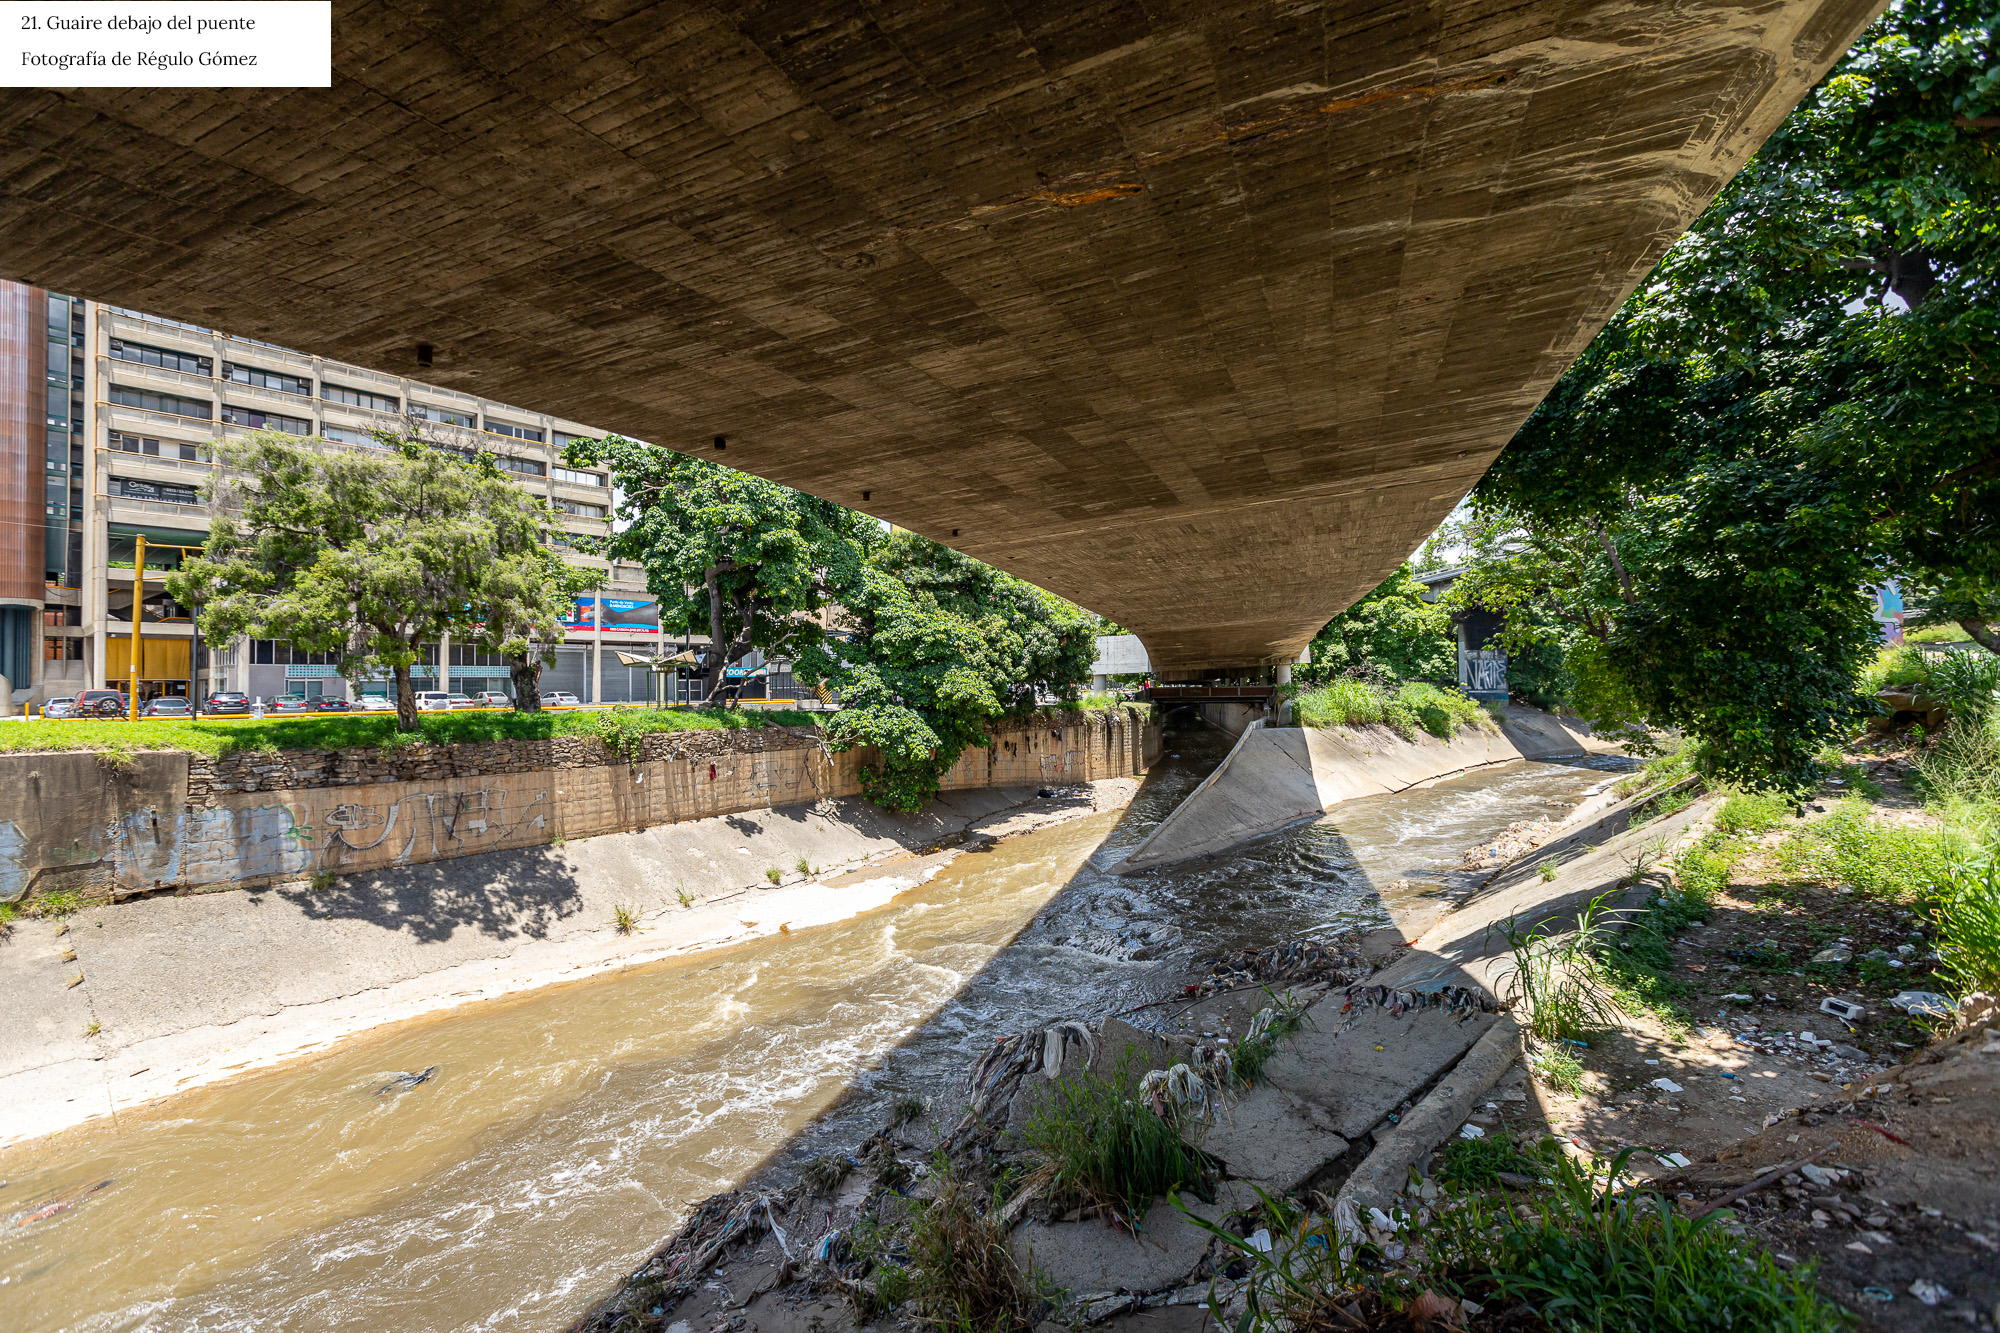 Río Guaire: espacio público y ecología en Caracas